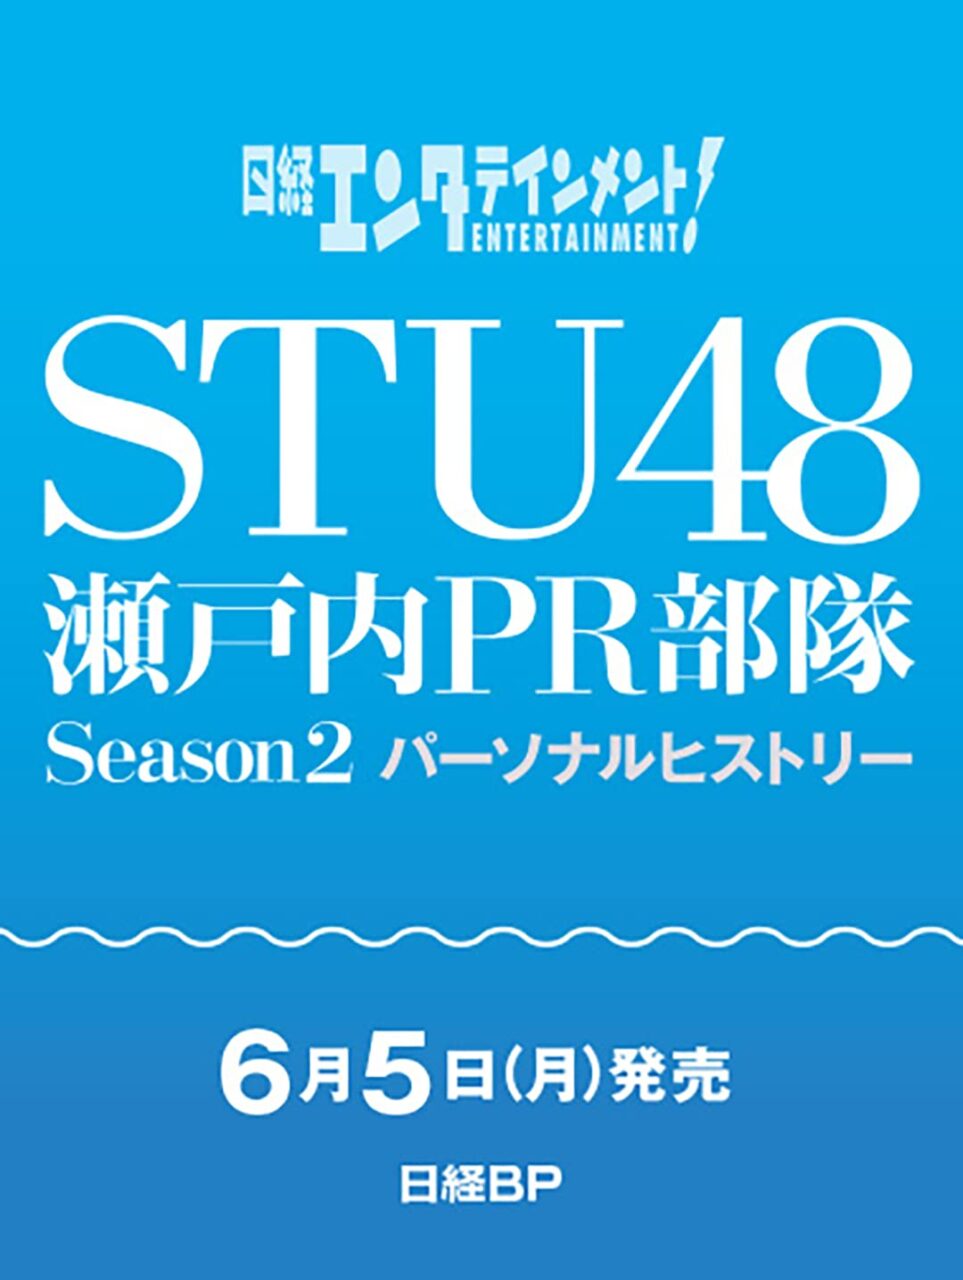 「STU48 瀬戸内PR部隊 Season2 パーソナルヒストリー」6/5発売決定！